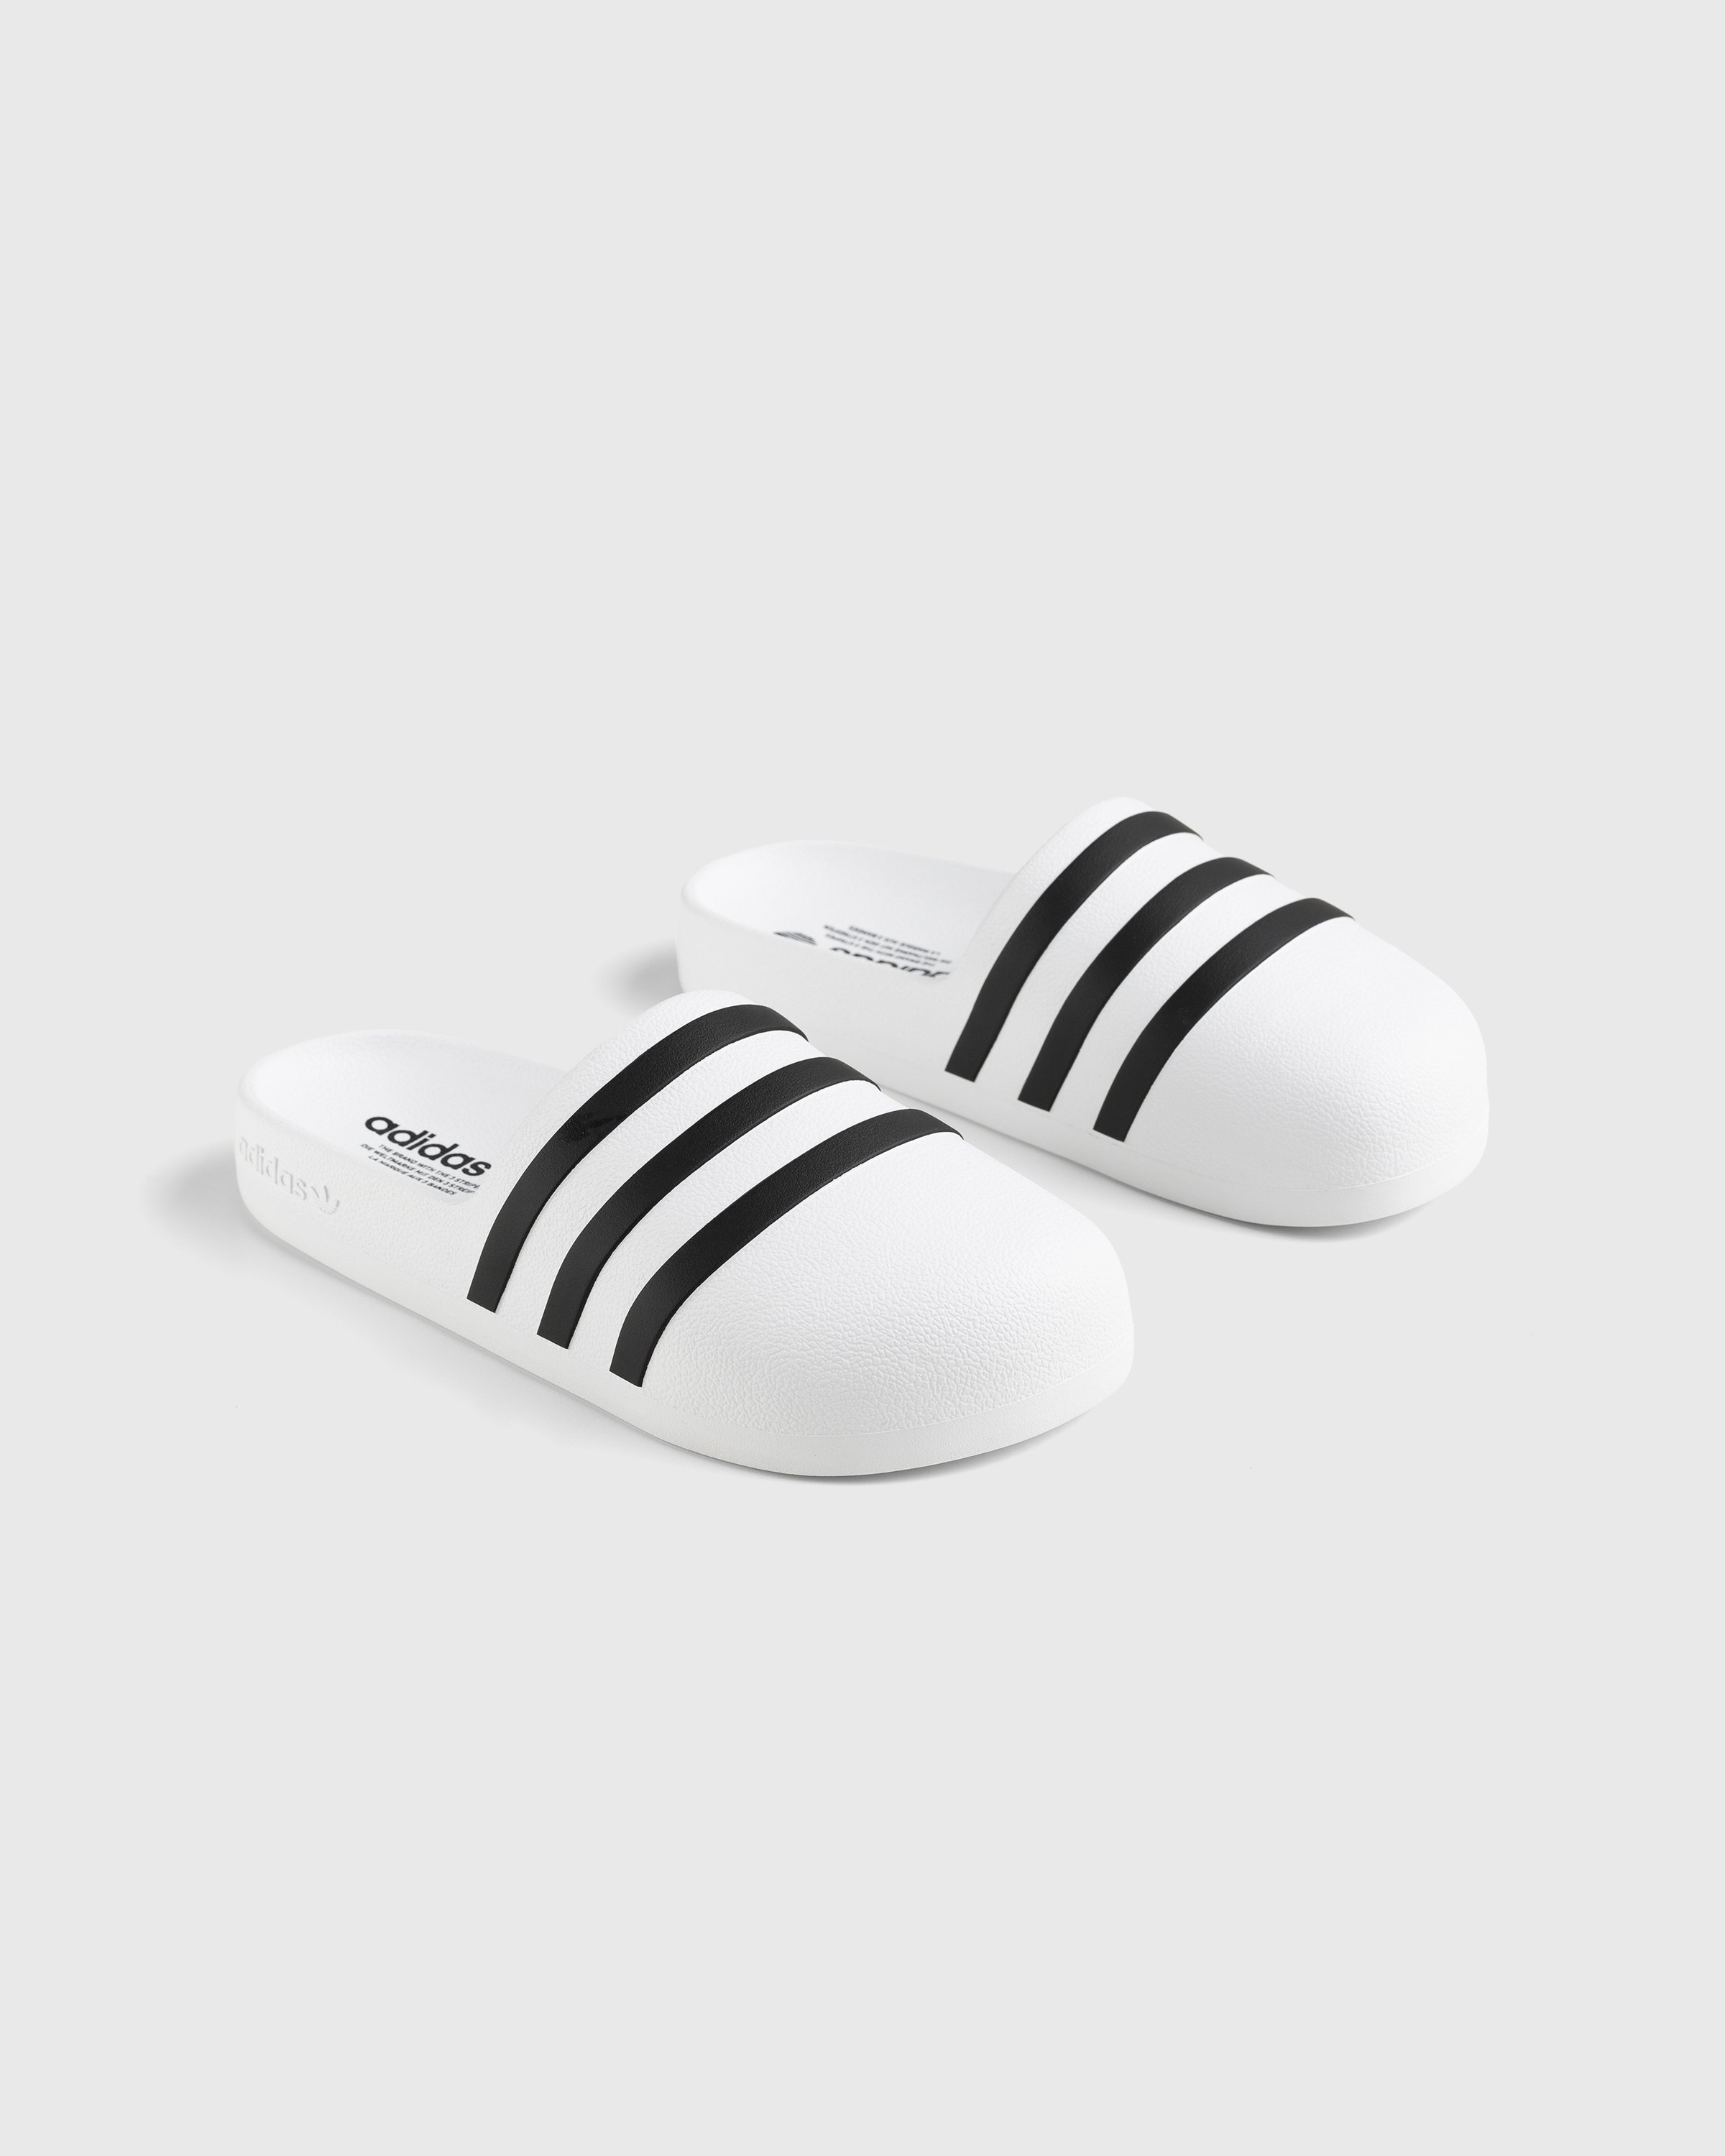 Adidas - Adifom Adilette White/Black/White - Footwear - White - Image 3